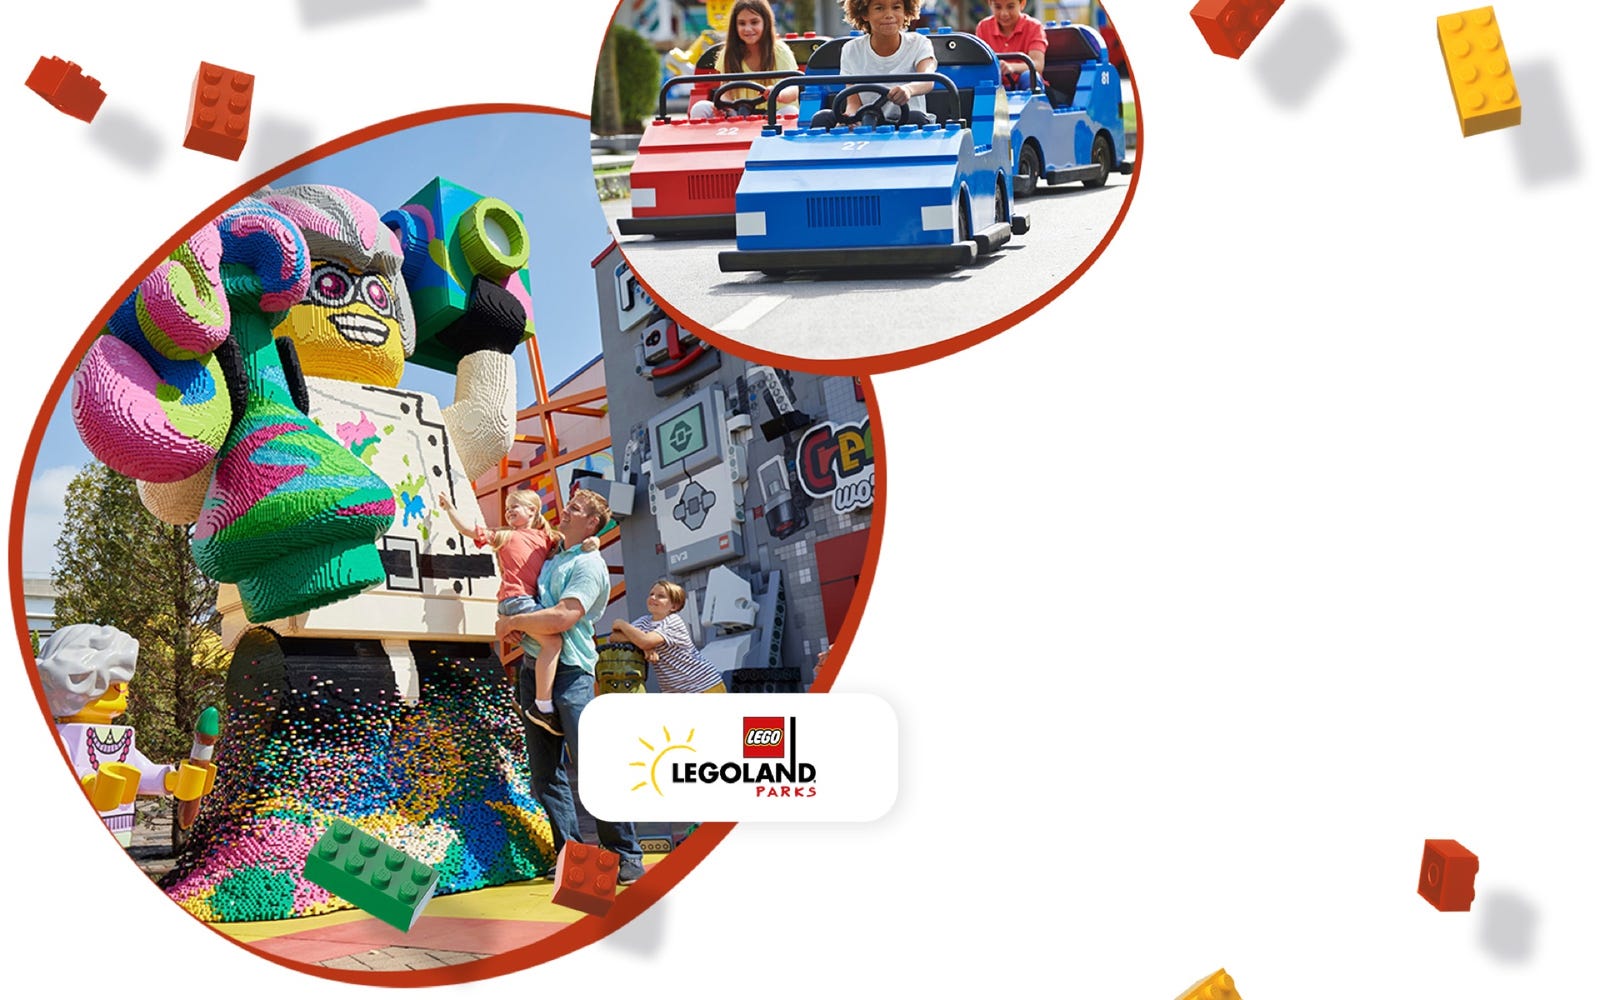 LEGO® Attractions LEGOLAND | Official LEGO® Shop